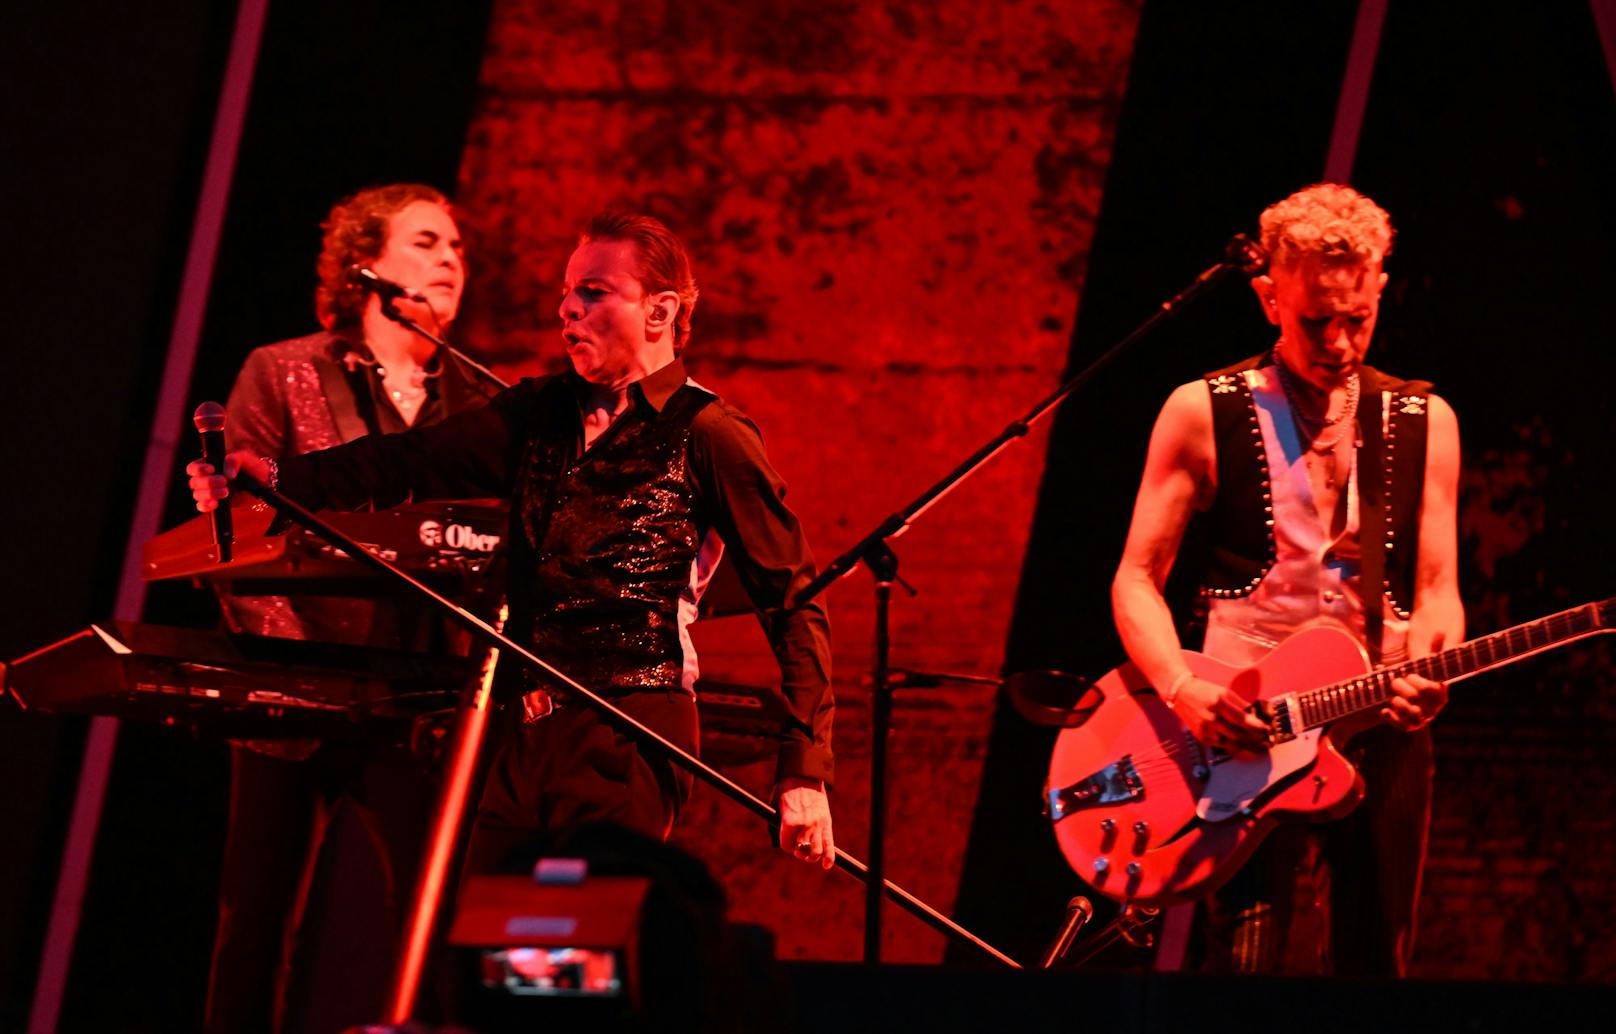 24.000 Fans haben gestern Abend in Klagenfurt getobt, als die Kultband Depeche Mode die Bühne betrat. Allen voran Sänger Dave Gahan.